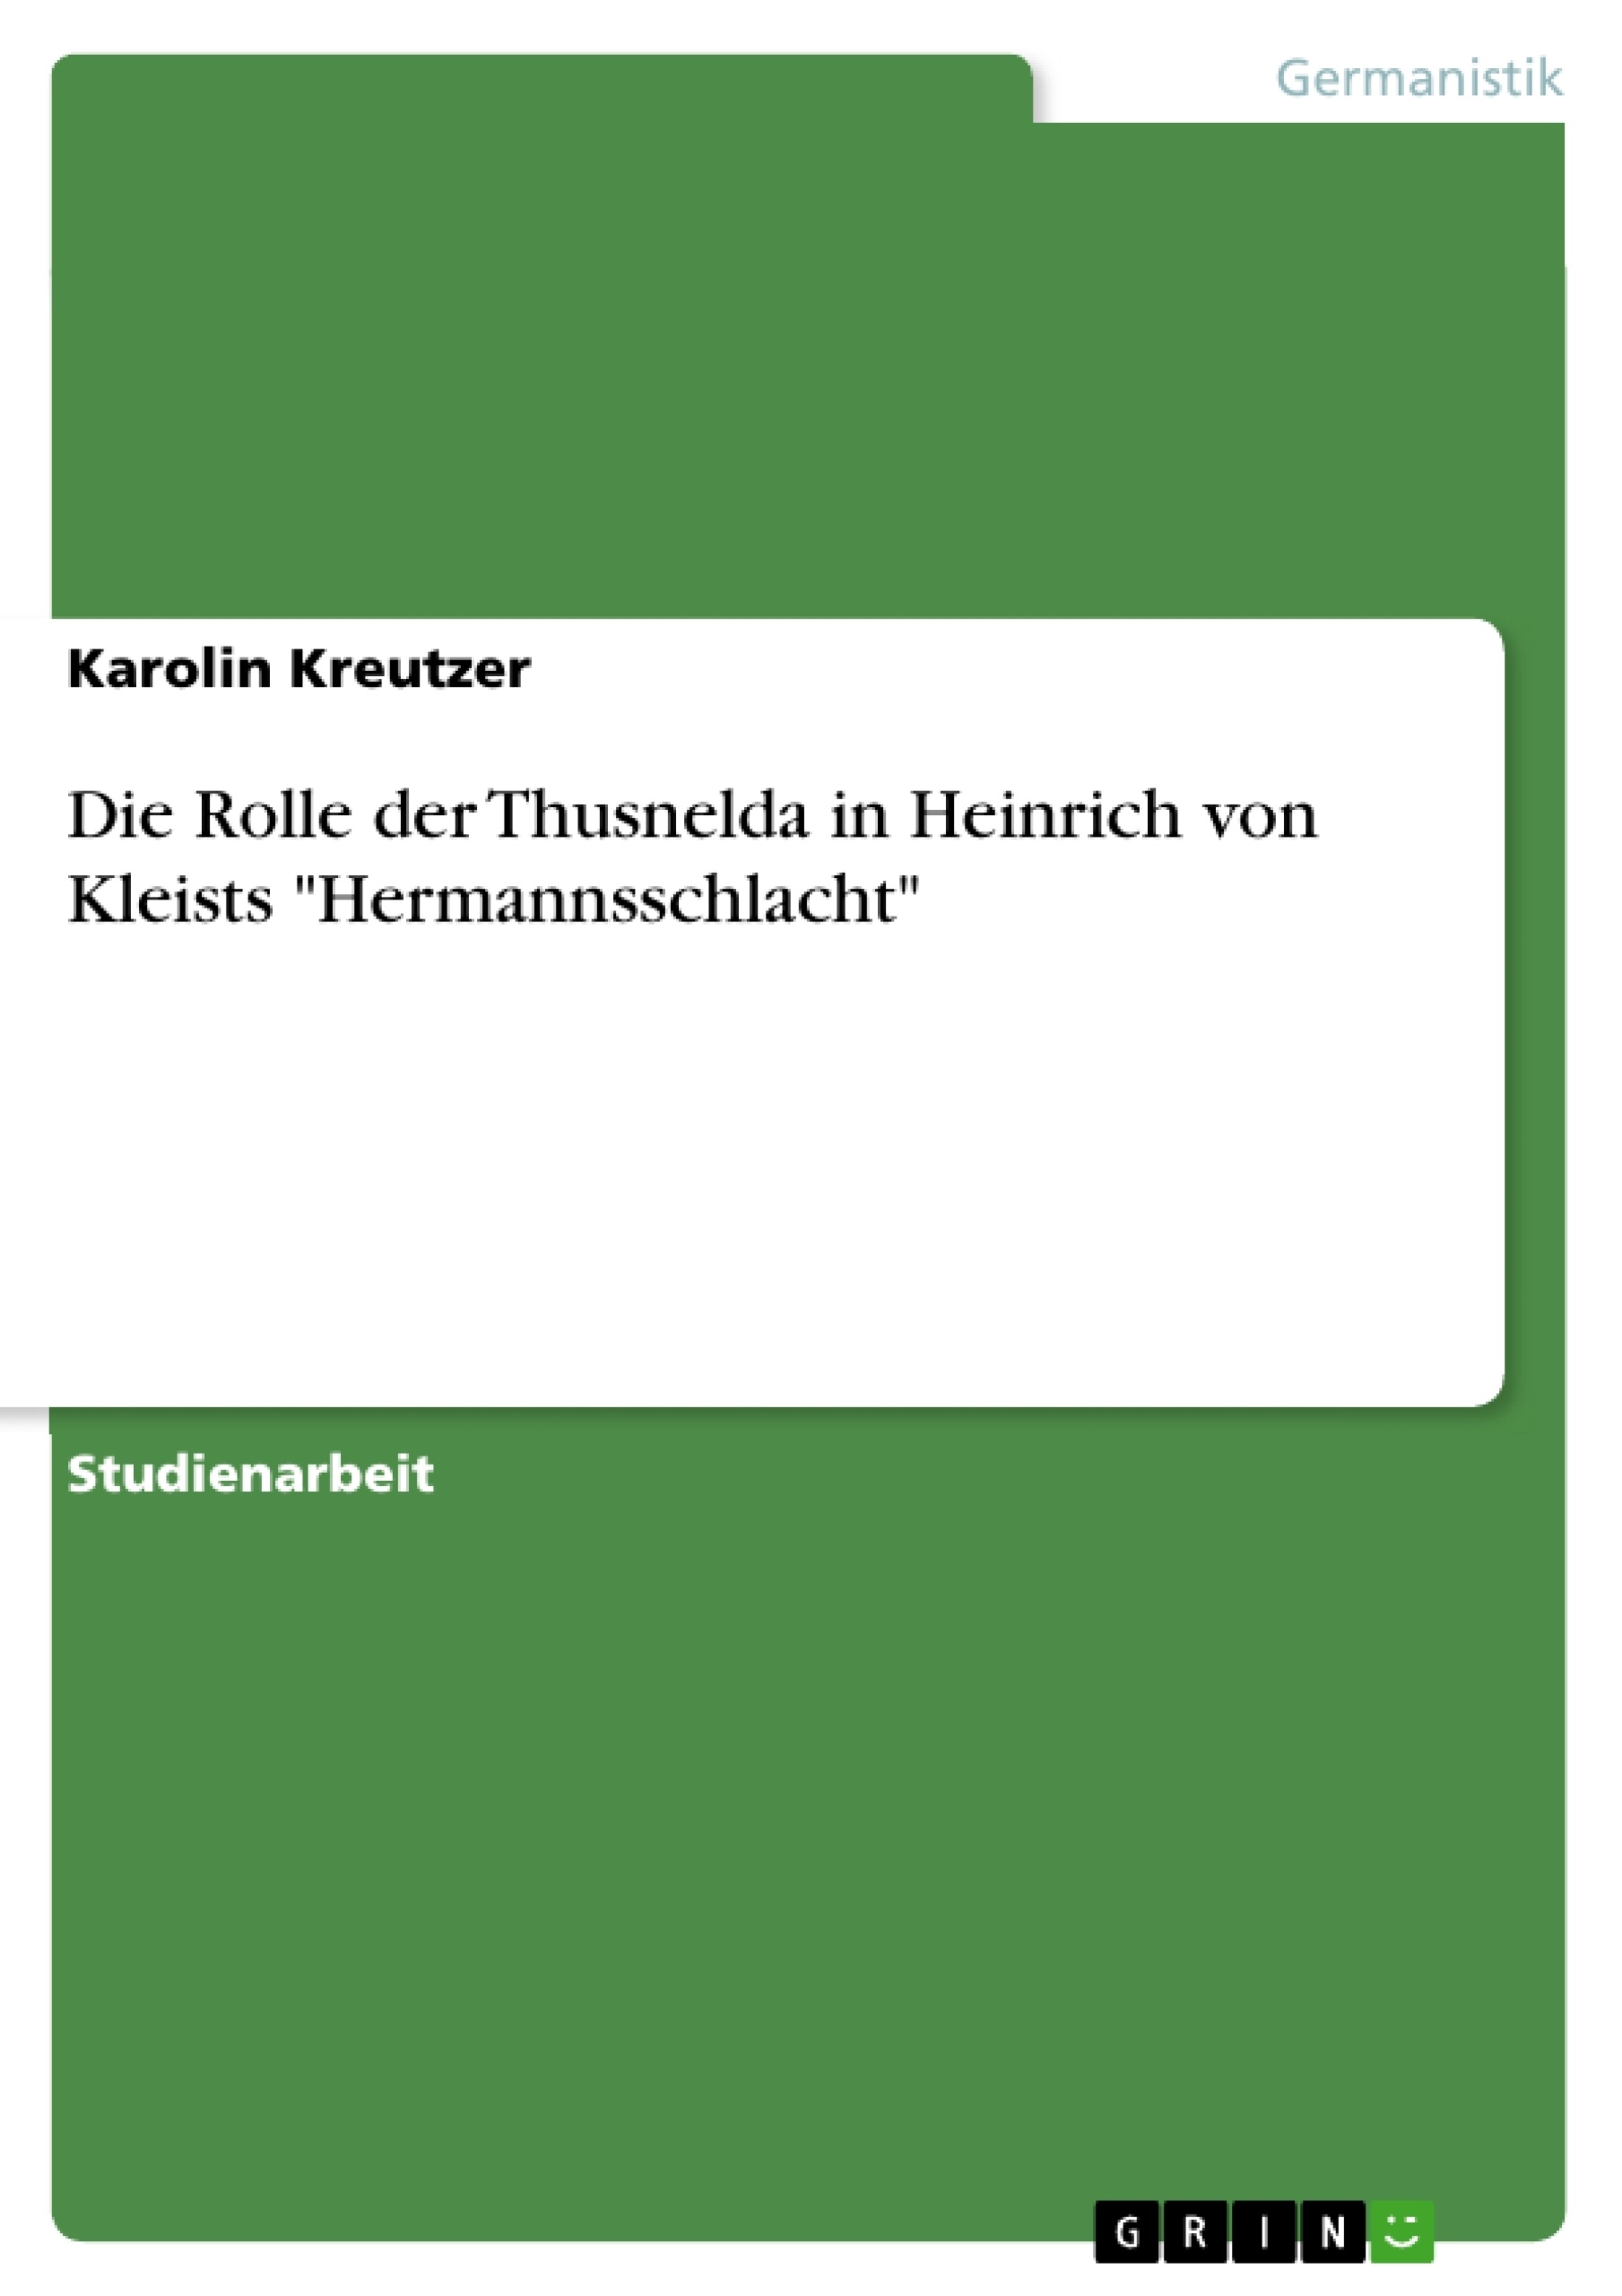 Título: Die Rolle der Thusnelda in Heinrich von Kleists "Hermannsschlacht"